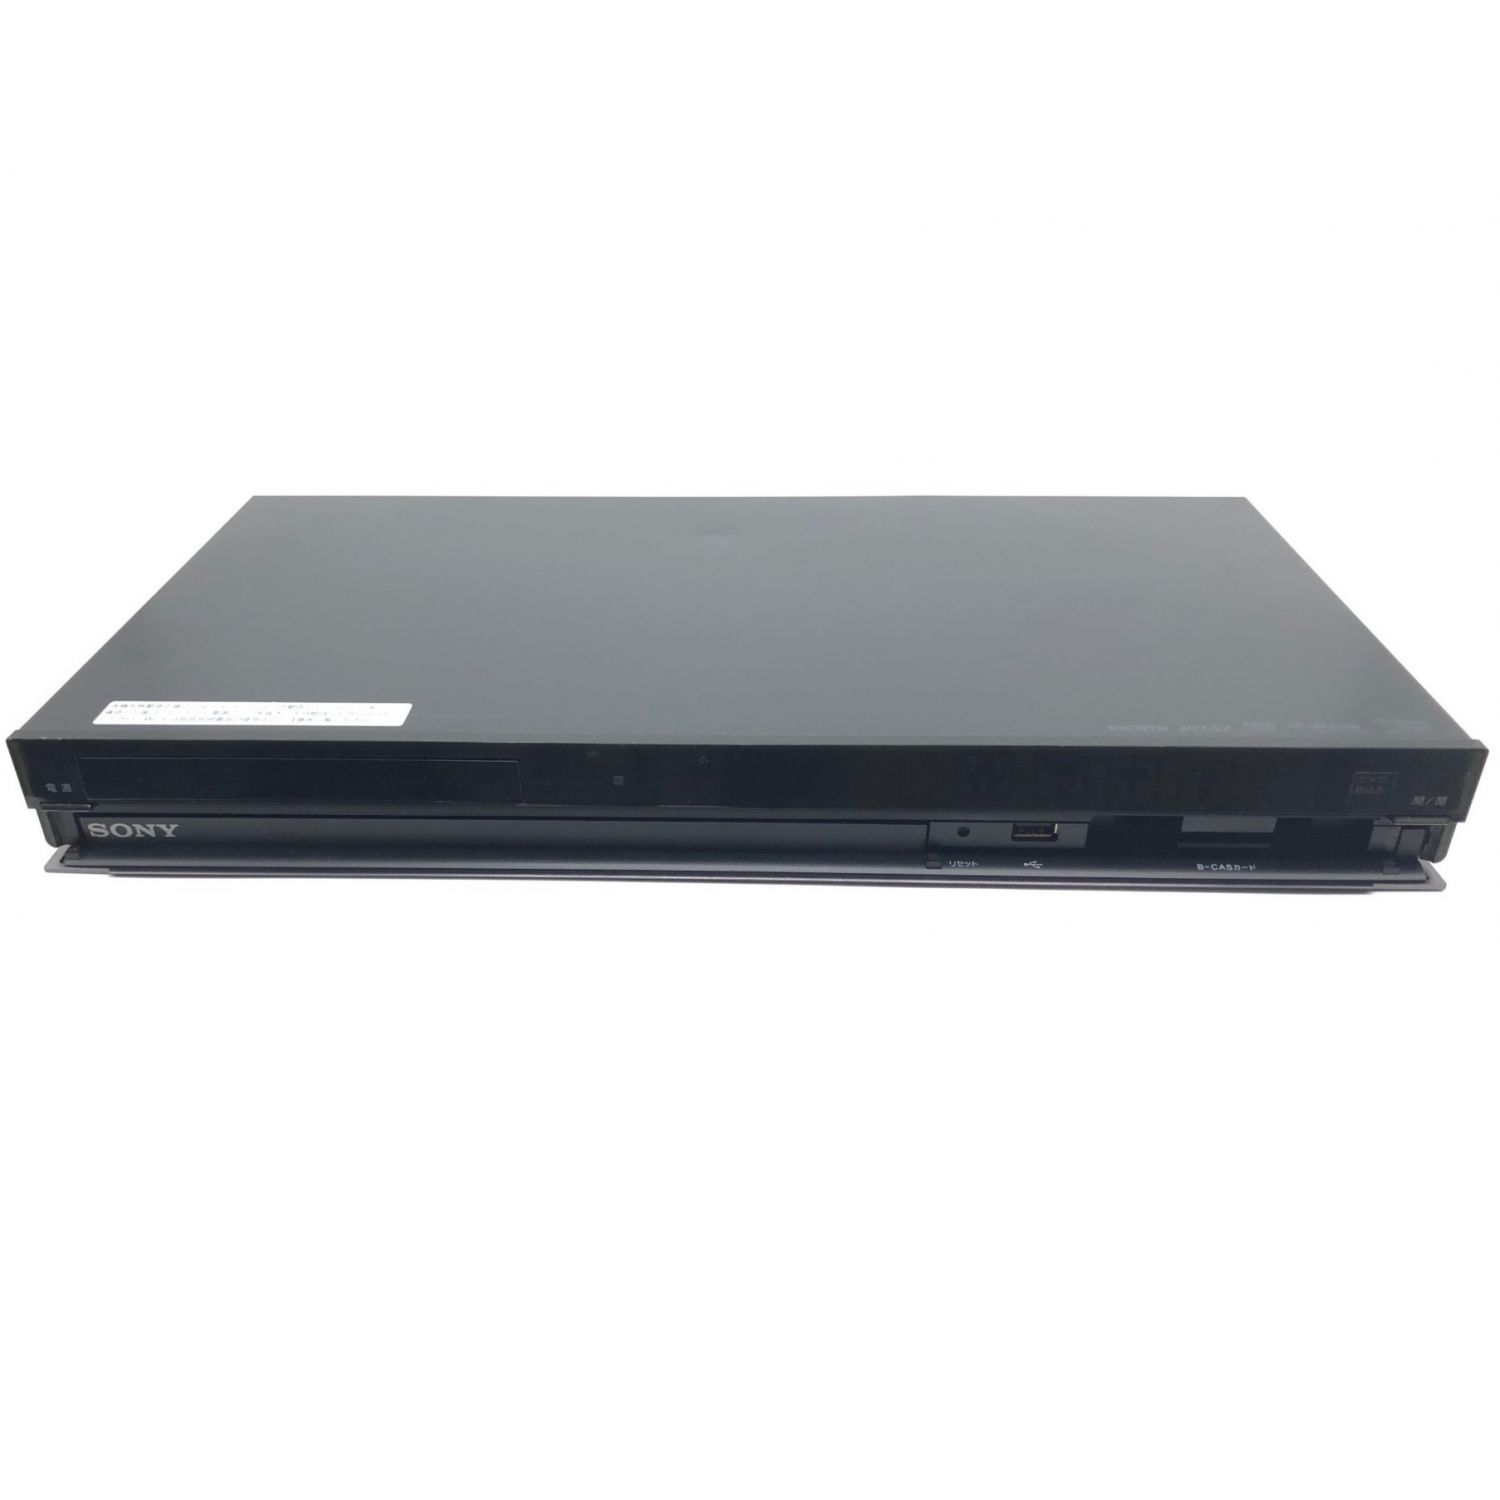 SONY (ソニー) Blu-rayレコーダー BDZ-AT350S 2012年製 1番組 500GB HDMI端子×1 1239327